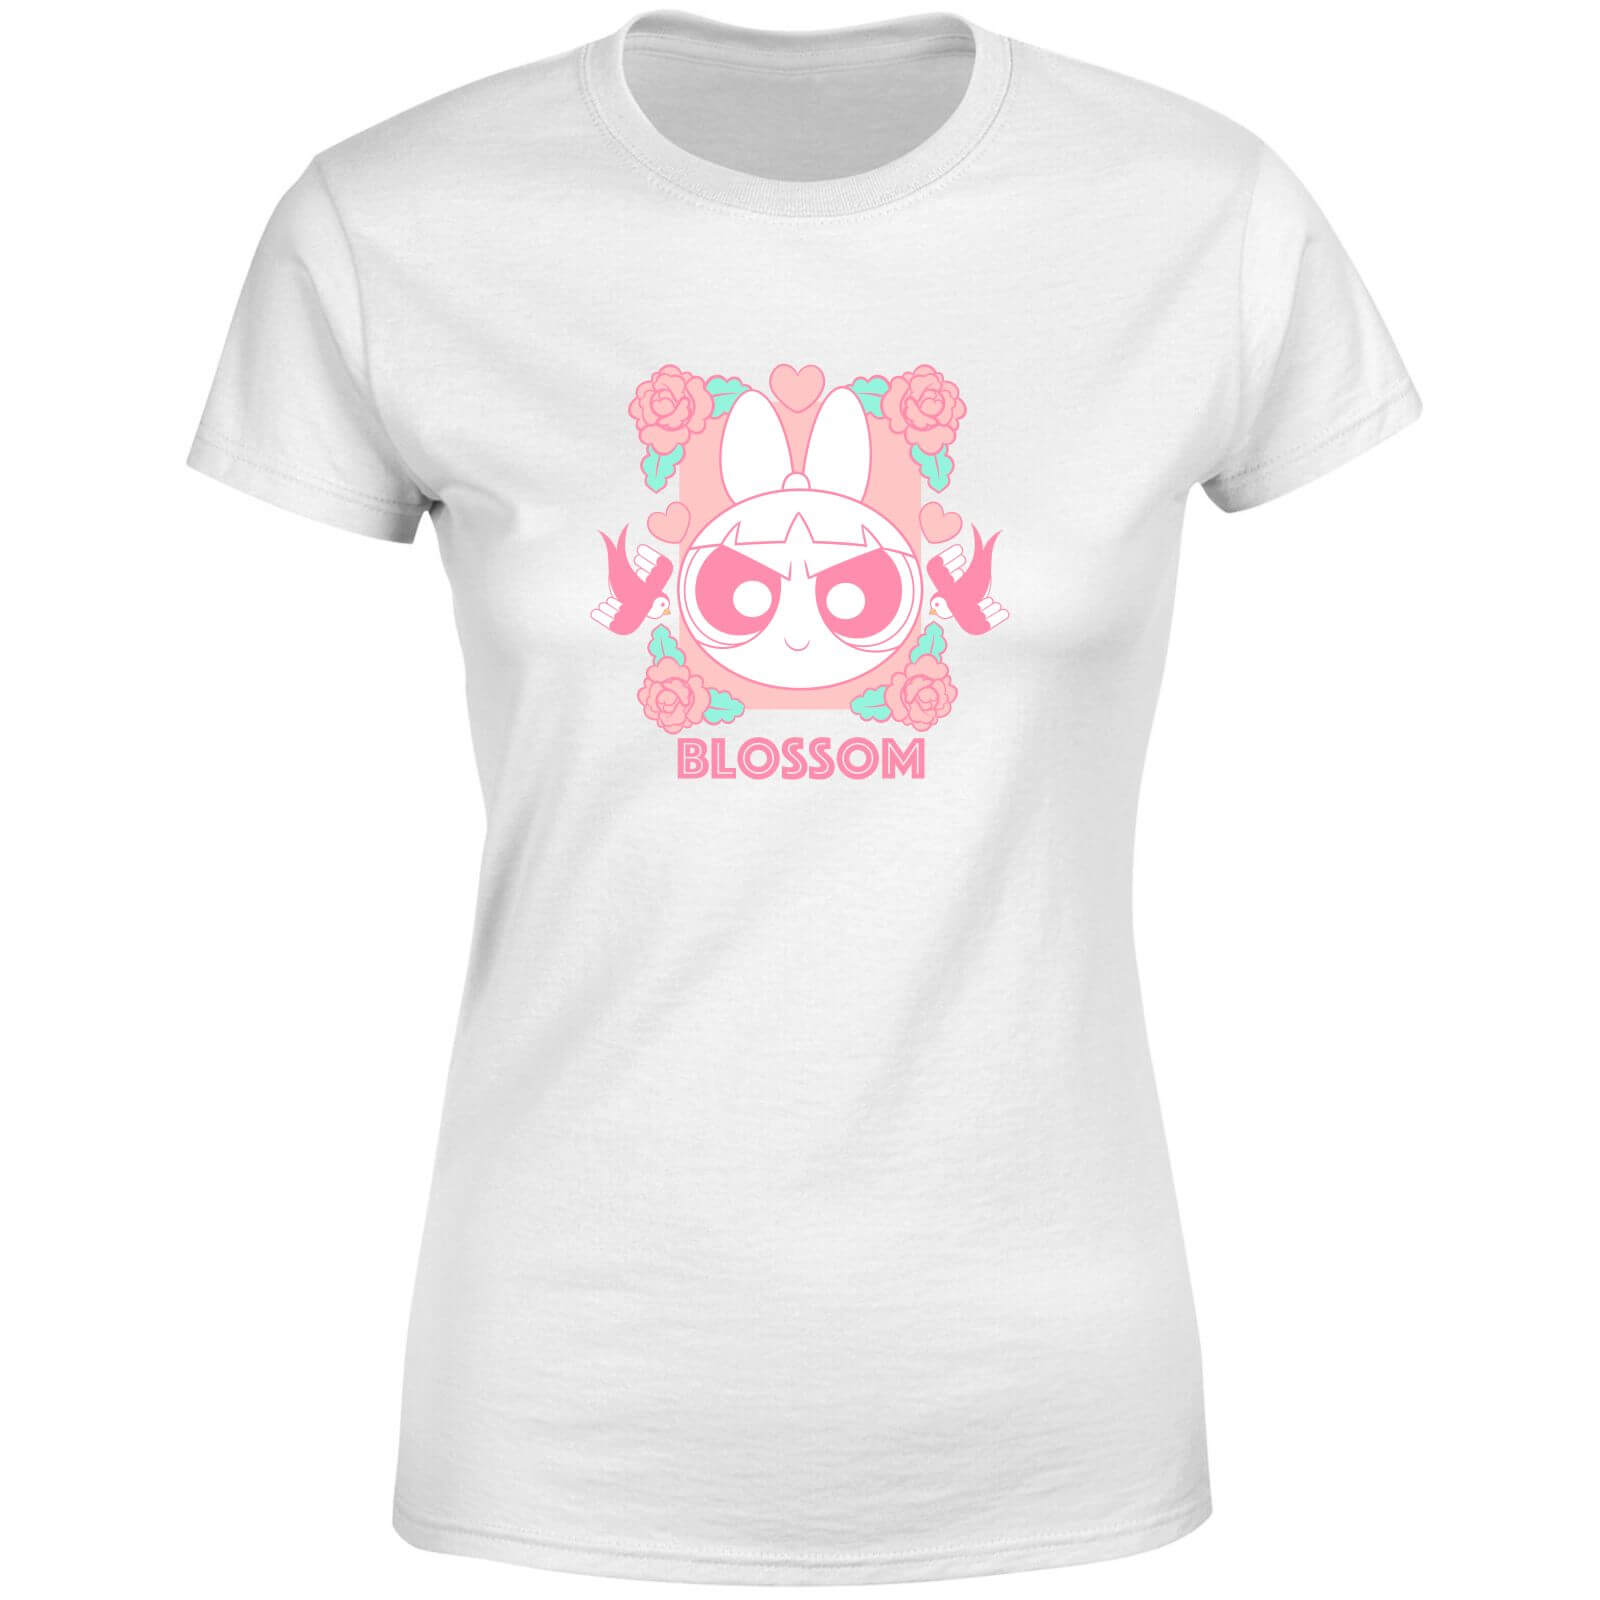 The Powerpuff Girls Blossom Women's T-Shirt - White - S - White